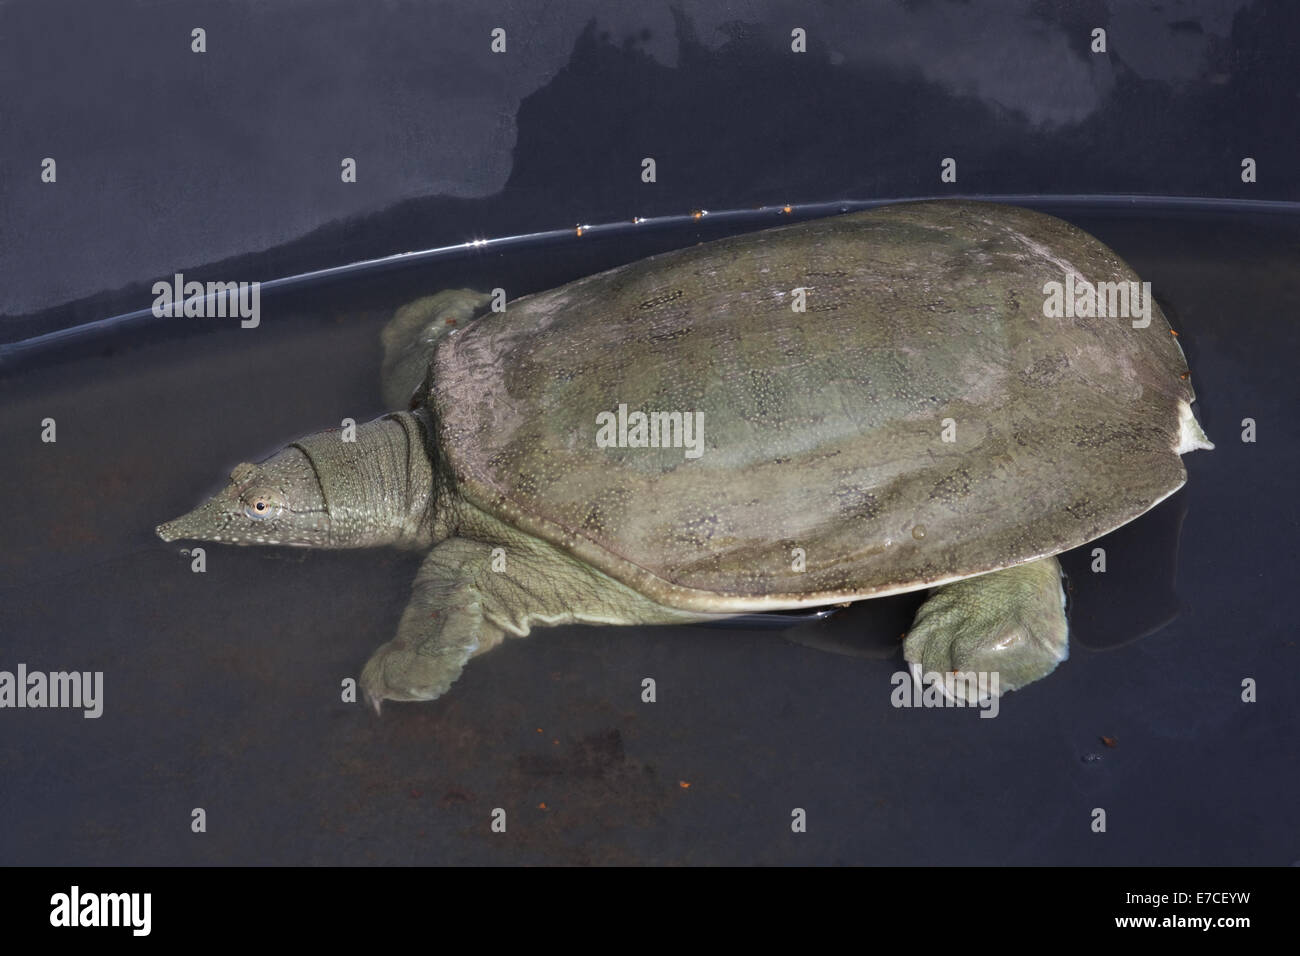 Chinesische Softshell Turtle (Pelodiscus Sinensis). In einem Container. Obere Schale oder Carapax Markierungen zeigen. Für den menschlichen Verzehr gezüchtet. Stockfoto